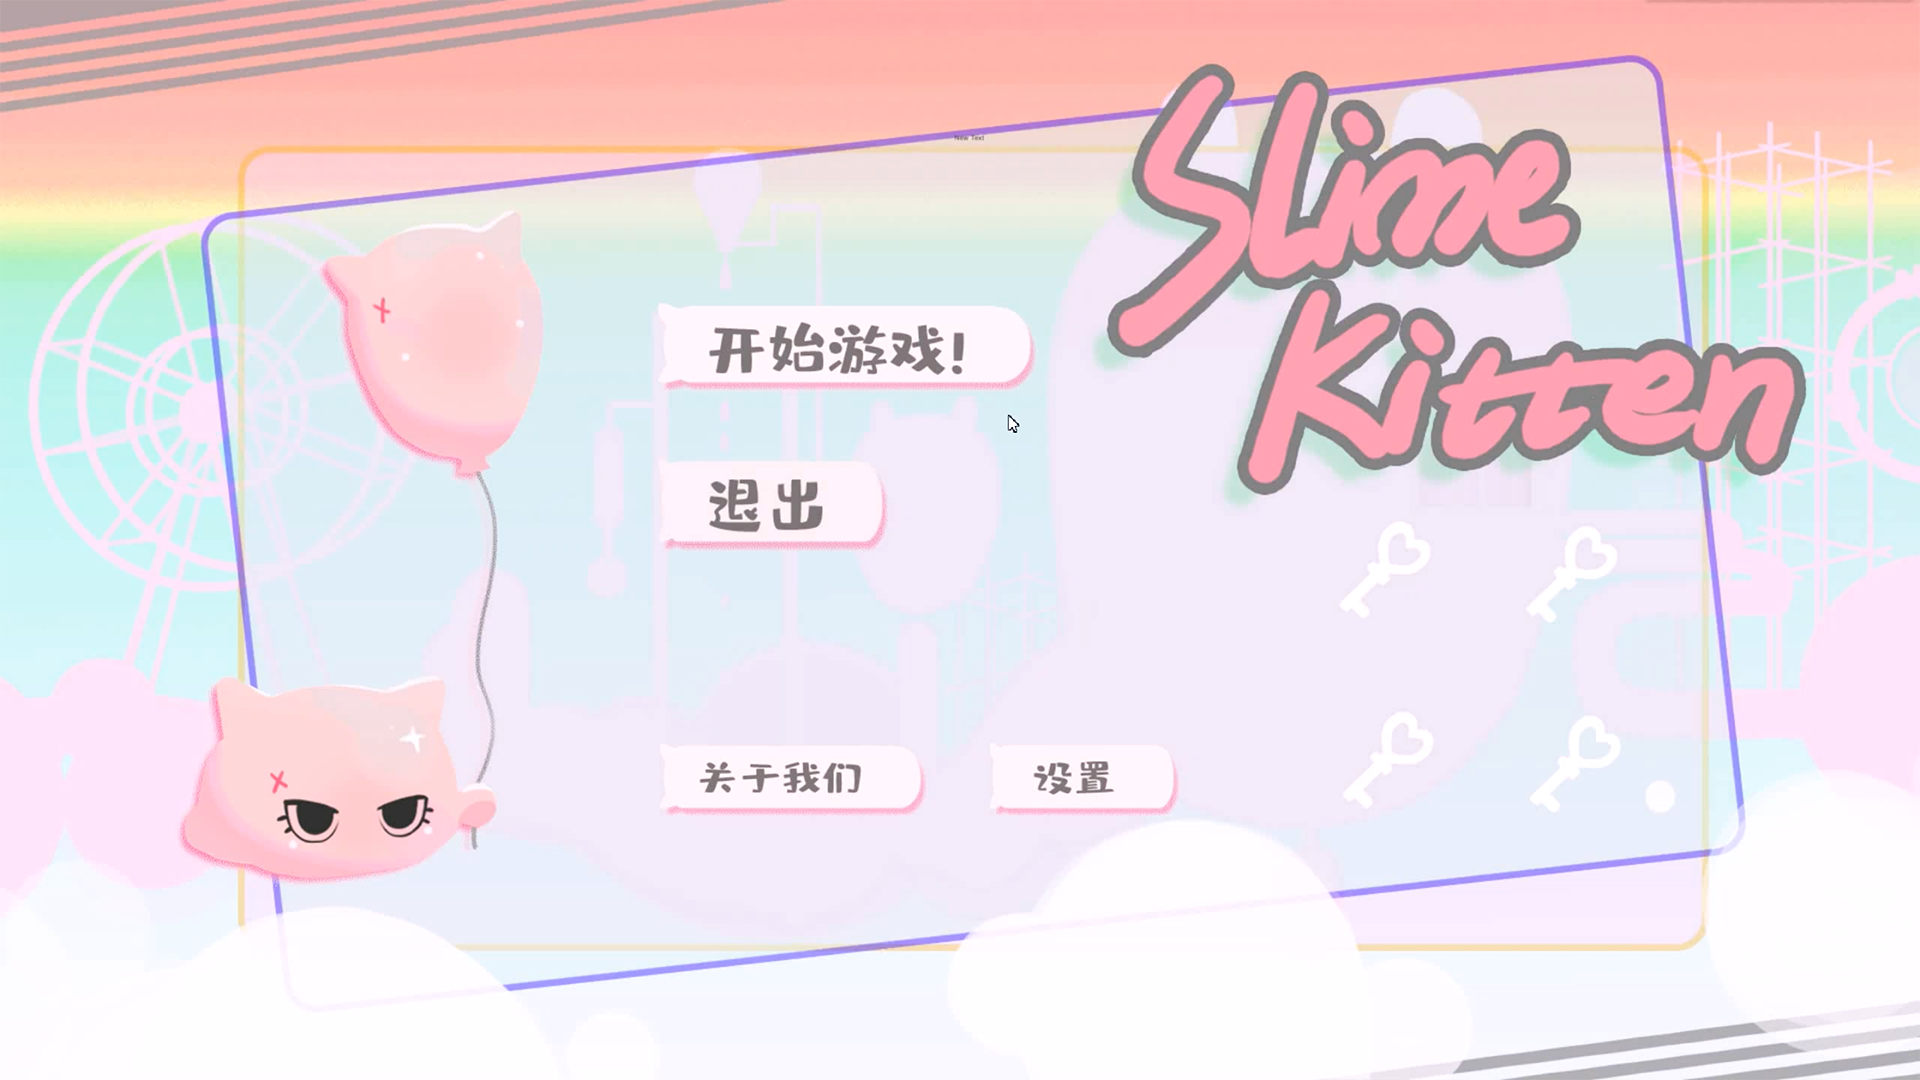 Banner of 史萊喵Slime kitten 